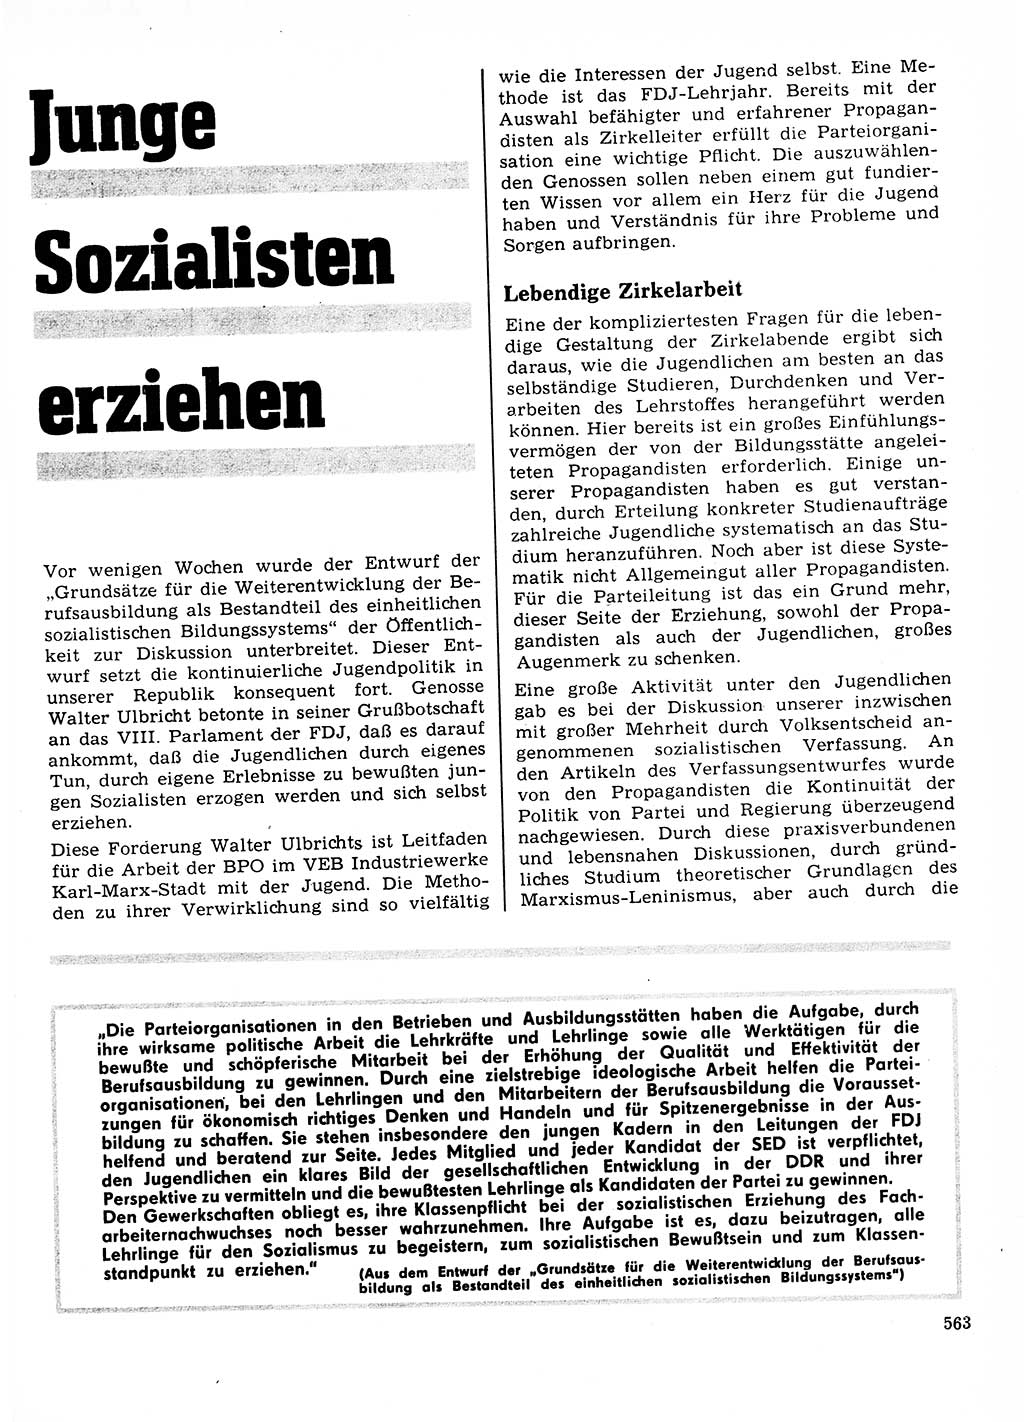 Neuer Weg (NW), Organ des Zentralkomitees (ZK) der SED (Sozialistische Einheitspartei Deutschlands) für Fragen des Parteilebens, 23. Jahrgang [Deutsche Demokratische Republik (DDR)] 1968, Seite 563 (NW ZK SED DDR 1968, S. 563)